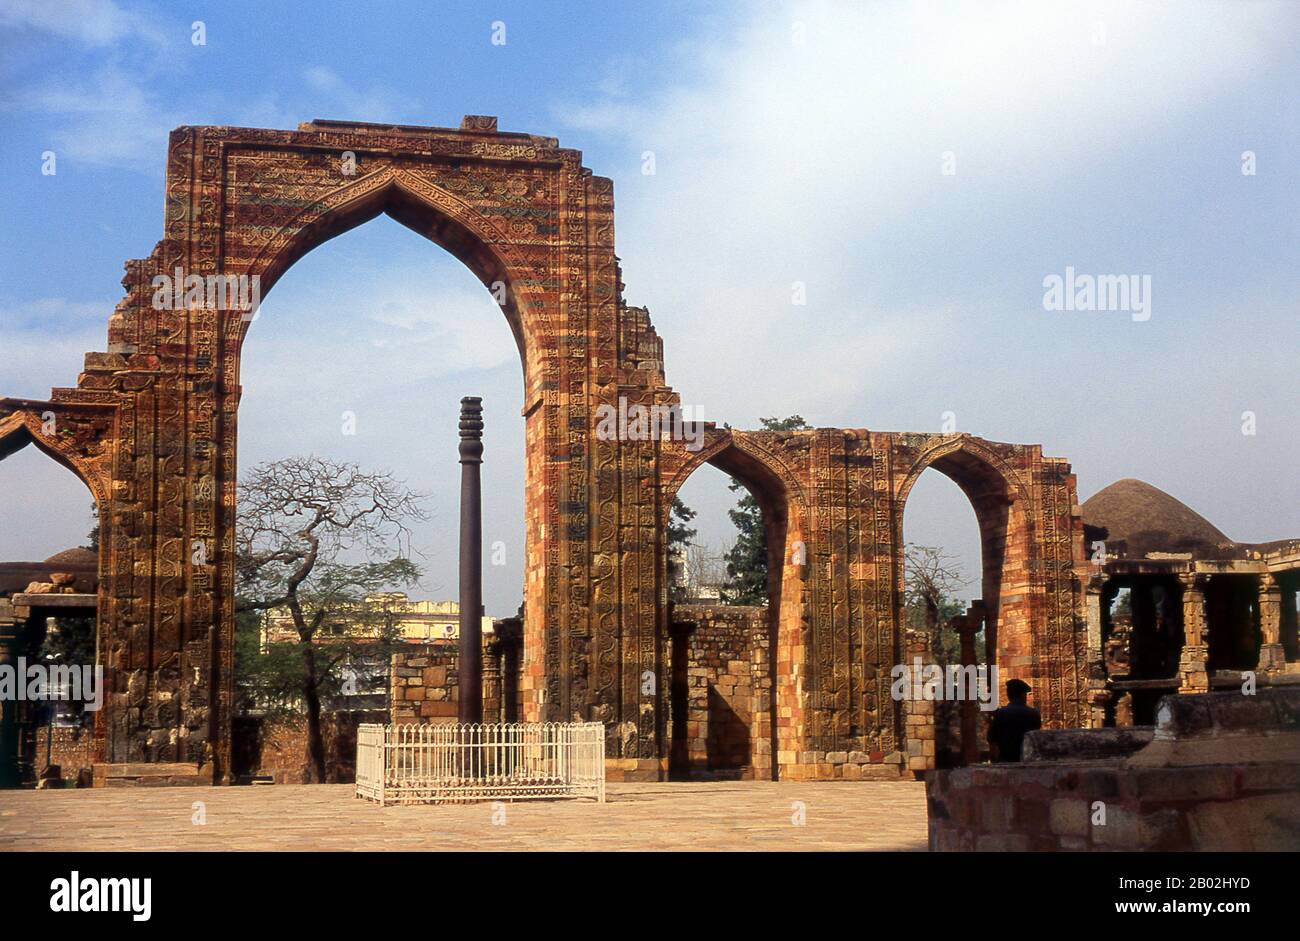 Die Quwwat-ul-Islam-Moschee wurde von Qutb-ud-din Aibak, dem Gründer der Mamluk- oder Slave-Dynastie, erbaut. Die Bauarbeiten begannen im Jahre 11,3 CE. Es war die erste Moschee, die nach der islamischen Eroberung Indiens in Delhi erbaut wurde. Der Bau des Qutb-Minars wurde im Jahre 1192 von Qutb-ud-din Aibak, dem ersten Sultan von Delhi, begonnen und von seinem Nachfolger Iltutmish ausgeführt. 1368 konstruierte Firoz Shah Tughlaq die fünfte und letzte Geschichte. Delhi soll der Ort von Indraprashta sein, der Hauptstadt der Pandavas des indischen Epos Mahabharata. Ausgrabungen haben Scherben bemalter Keramik aus der Umgebung ausgegraben Stockfoto